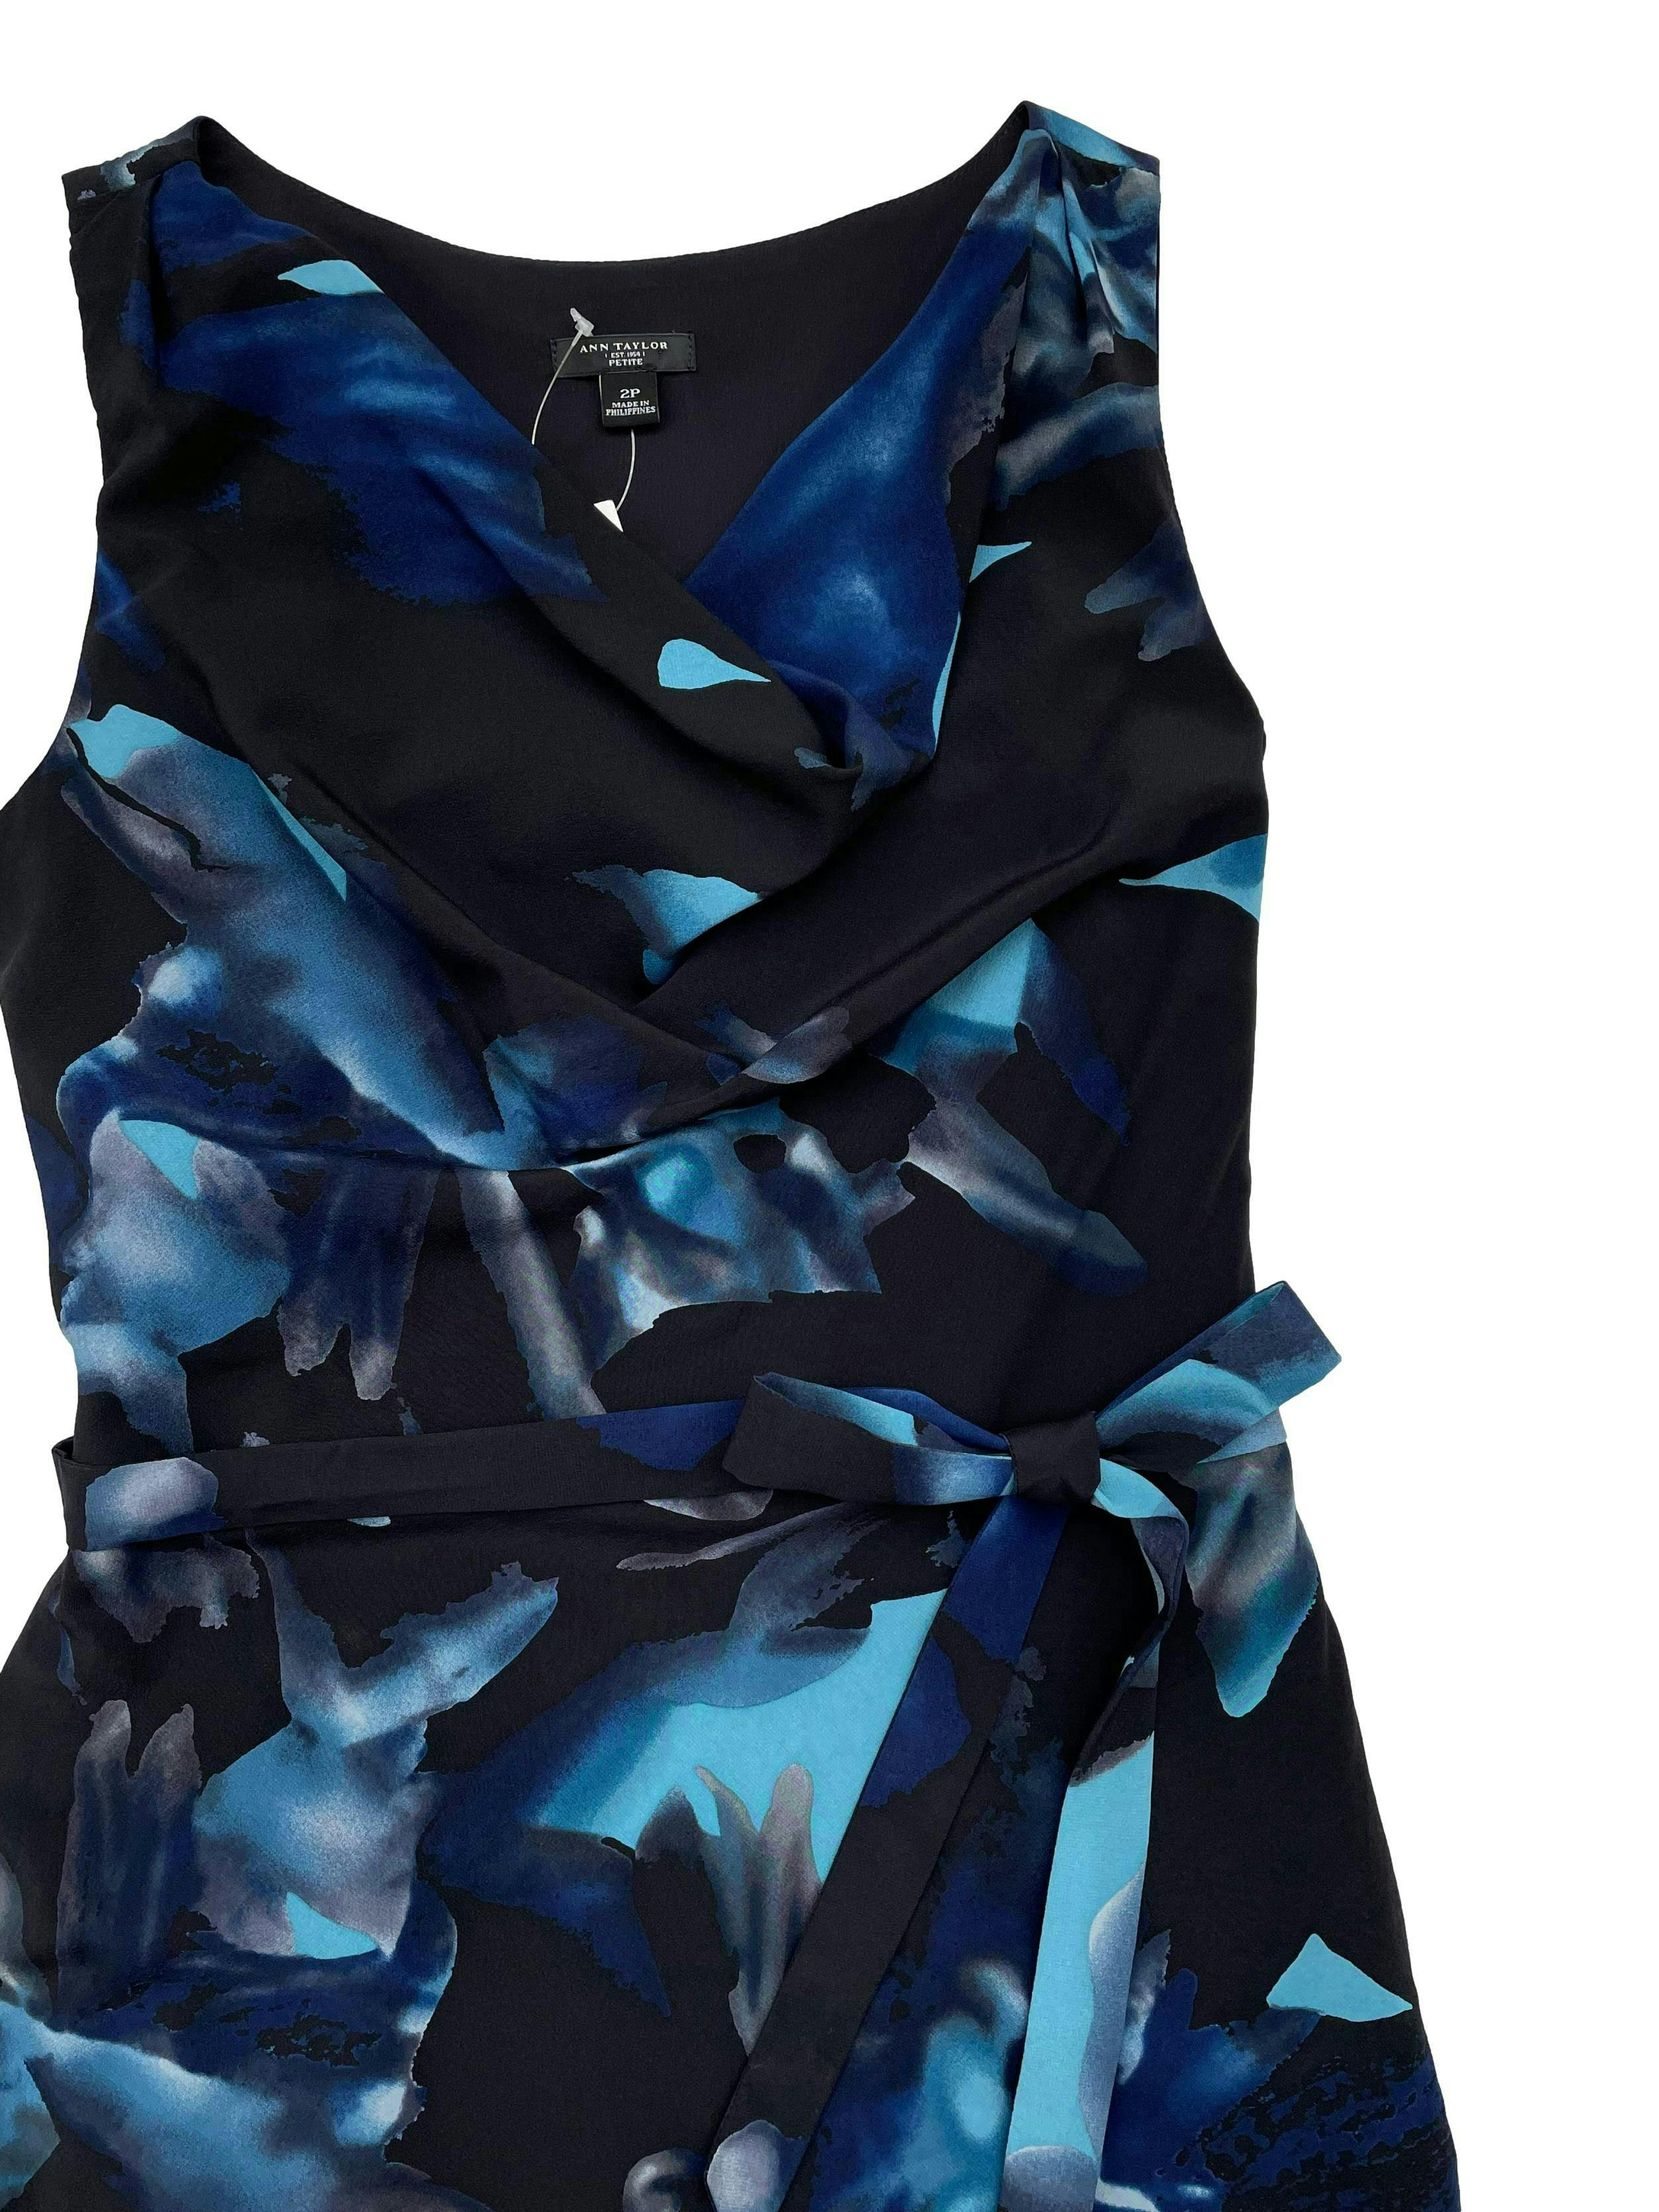 Vestido Ann Taylor negro con estampado en tonos azules, 92% seda, forrado, cuello caído, cierre lateral y cinto para amarrar. Busto 90cm Largo 90cm